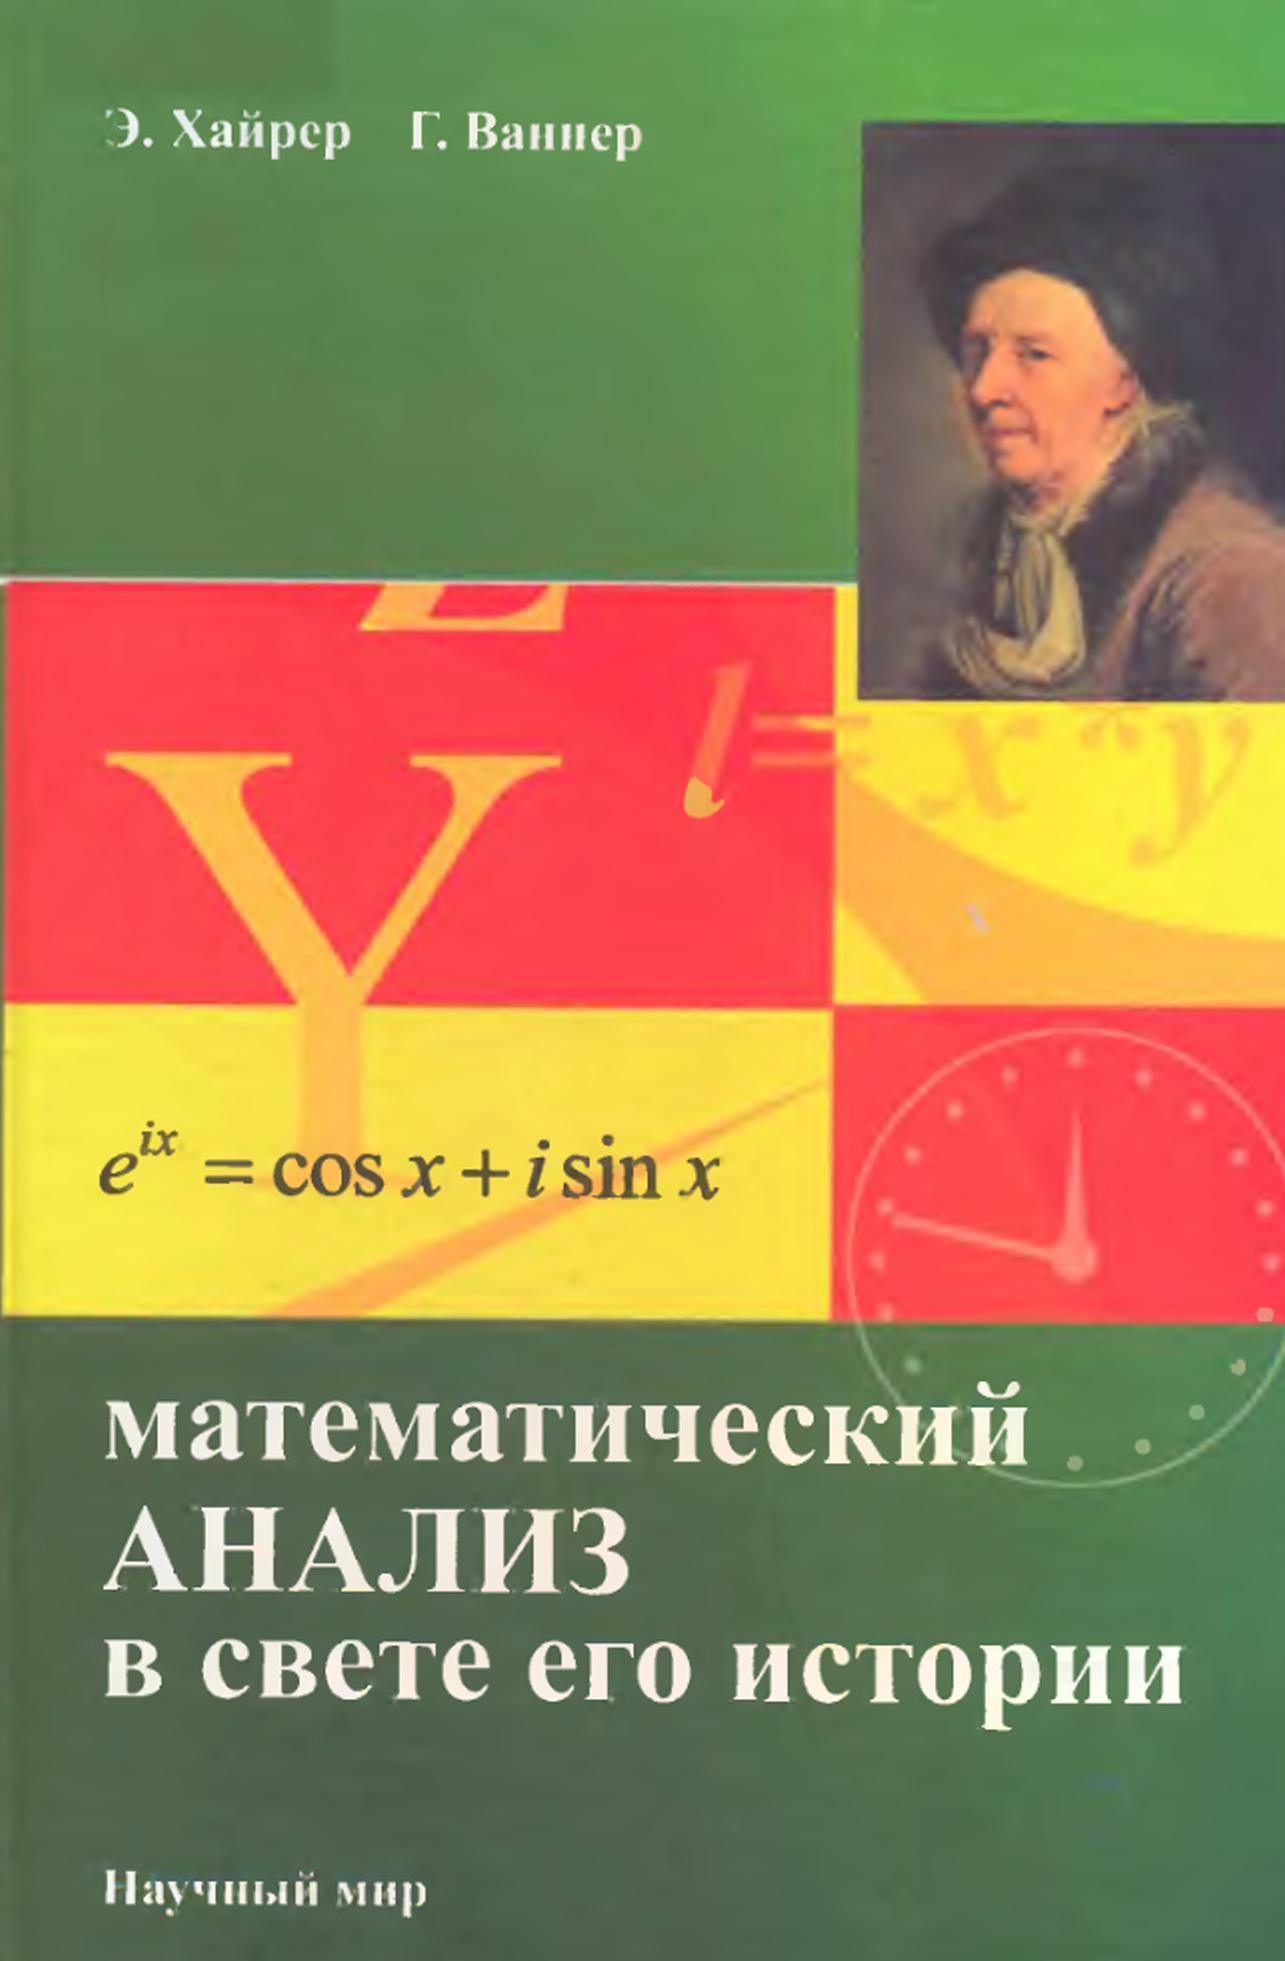 Математический анализ в свете его истории, Хайрер Э., Ваннер Г., 2008